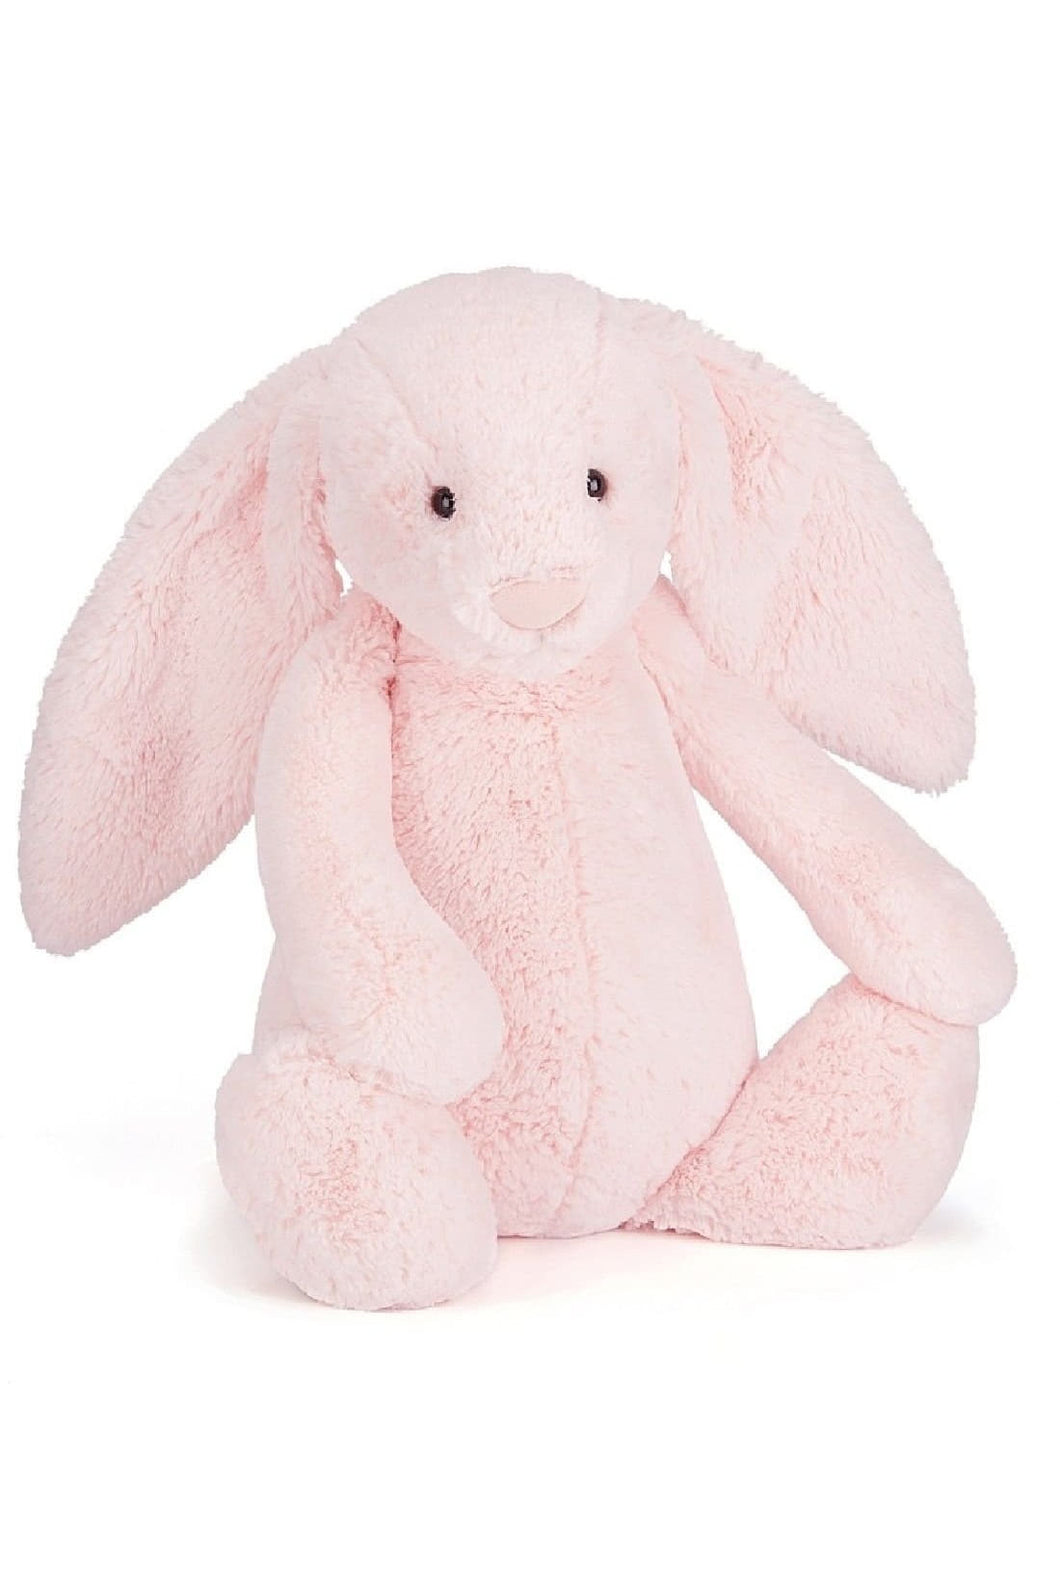 Jellycat Bashful Pink Bunny 1